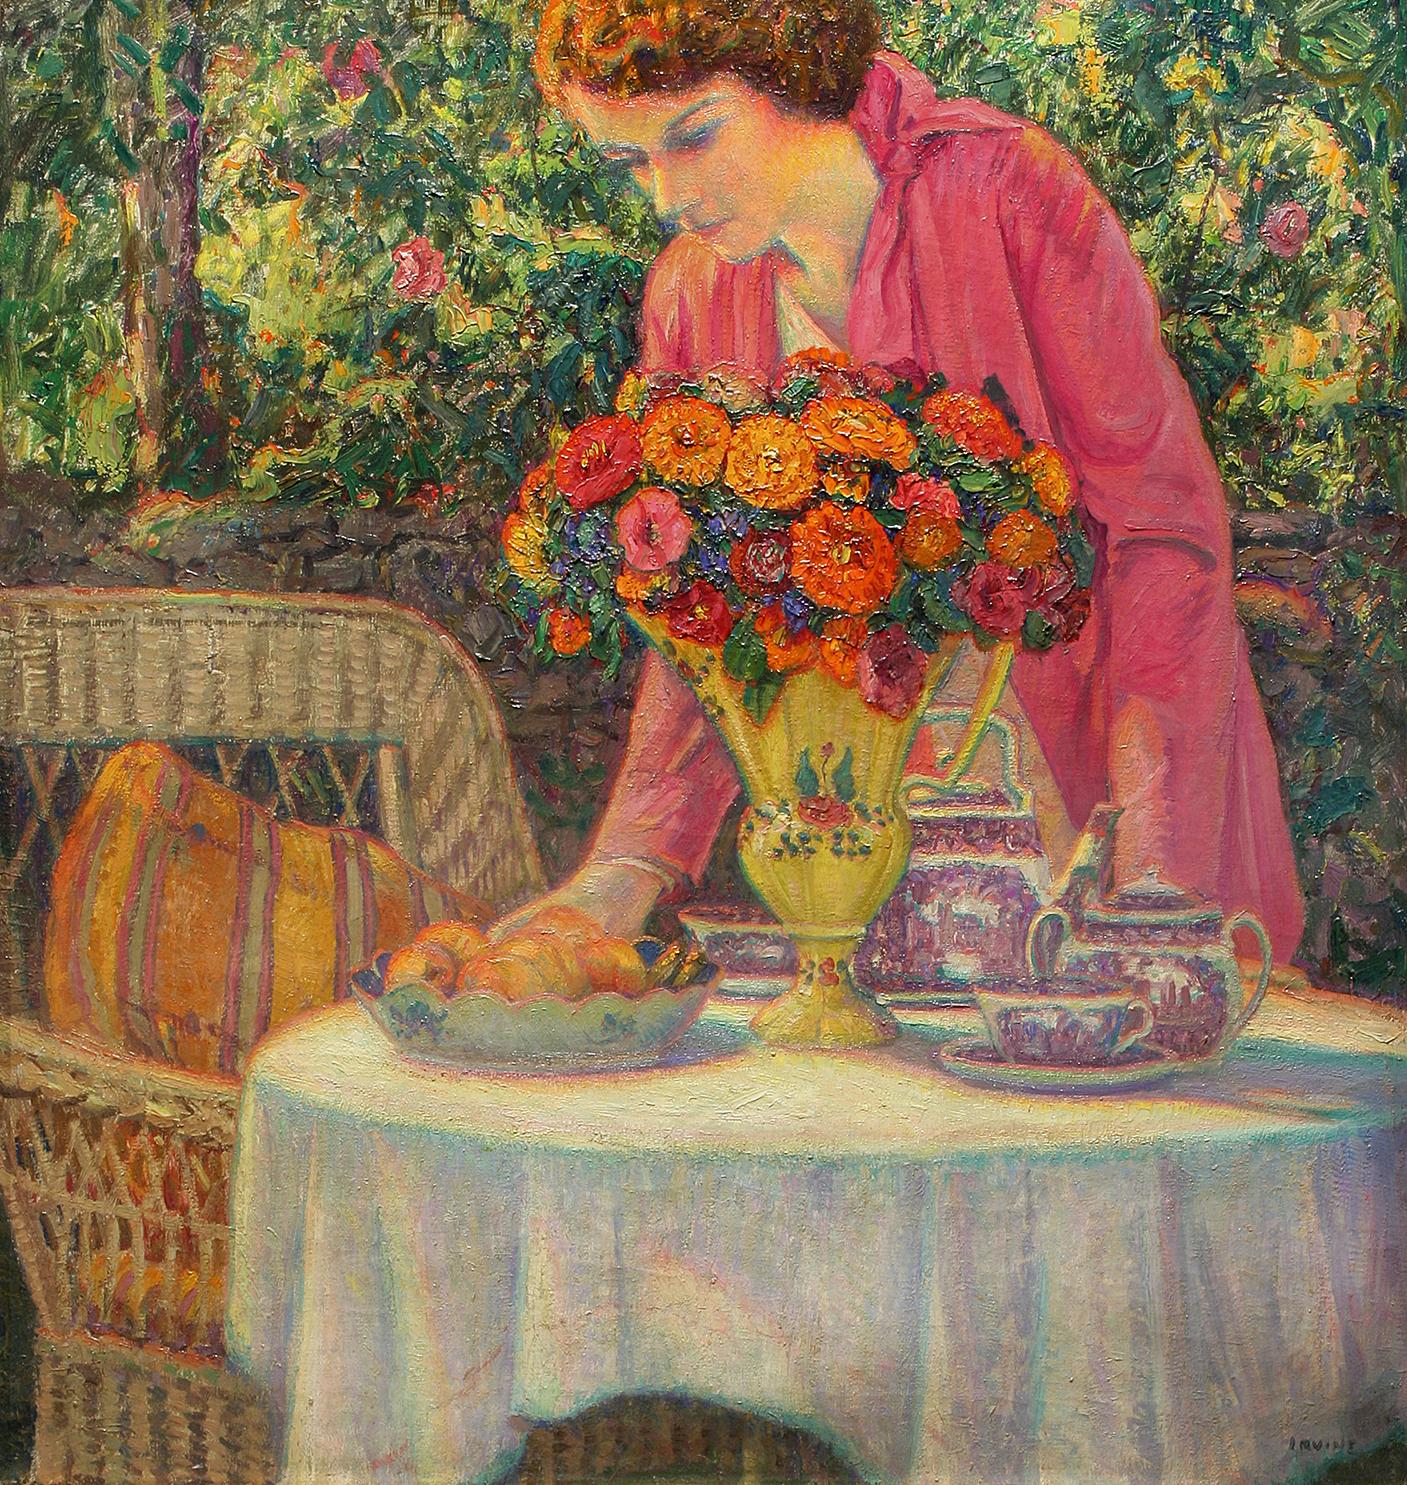 Still-Life Painting Wilson Henry Irvine - La fête au thé avec la fille de l'artiste 